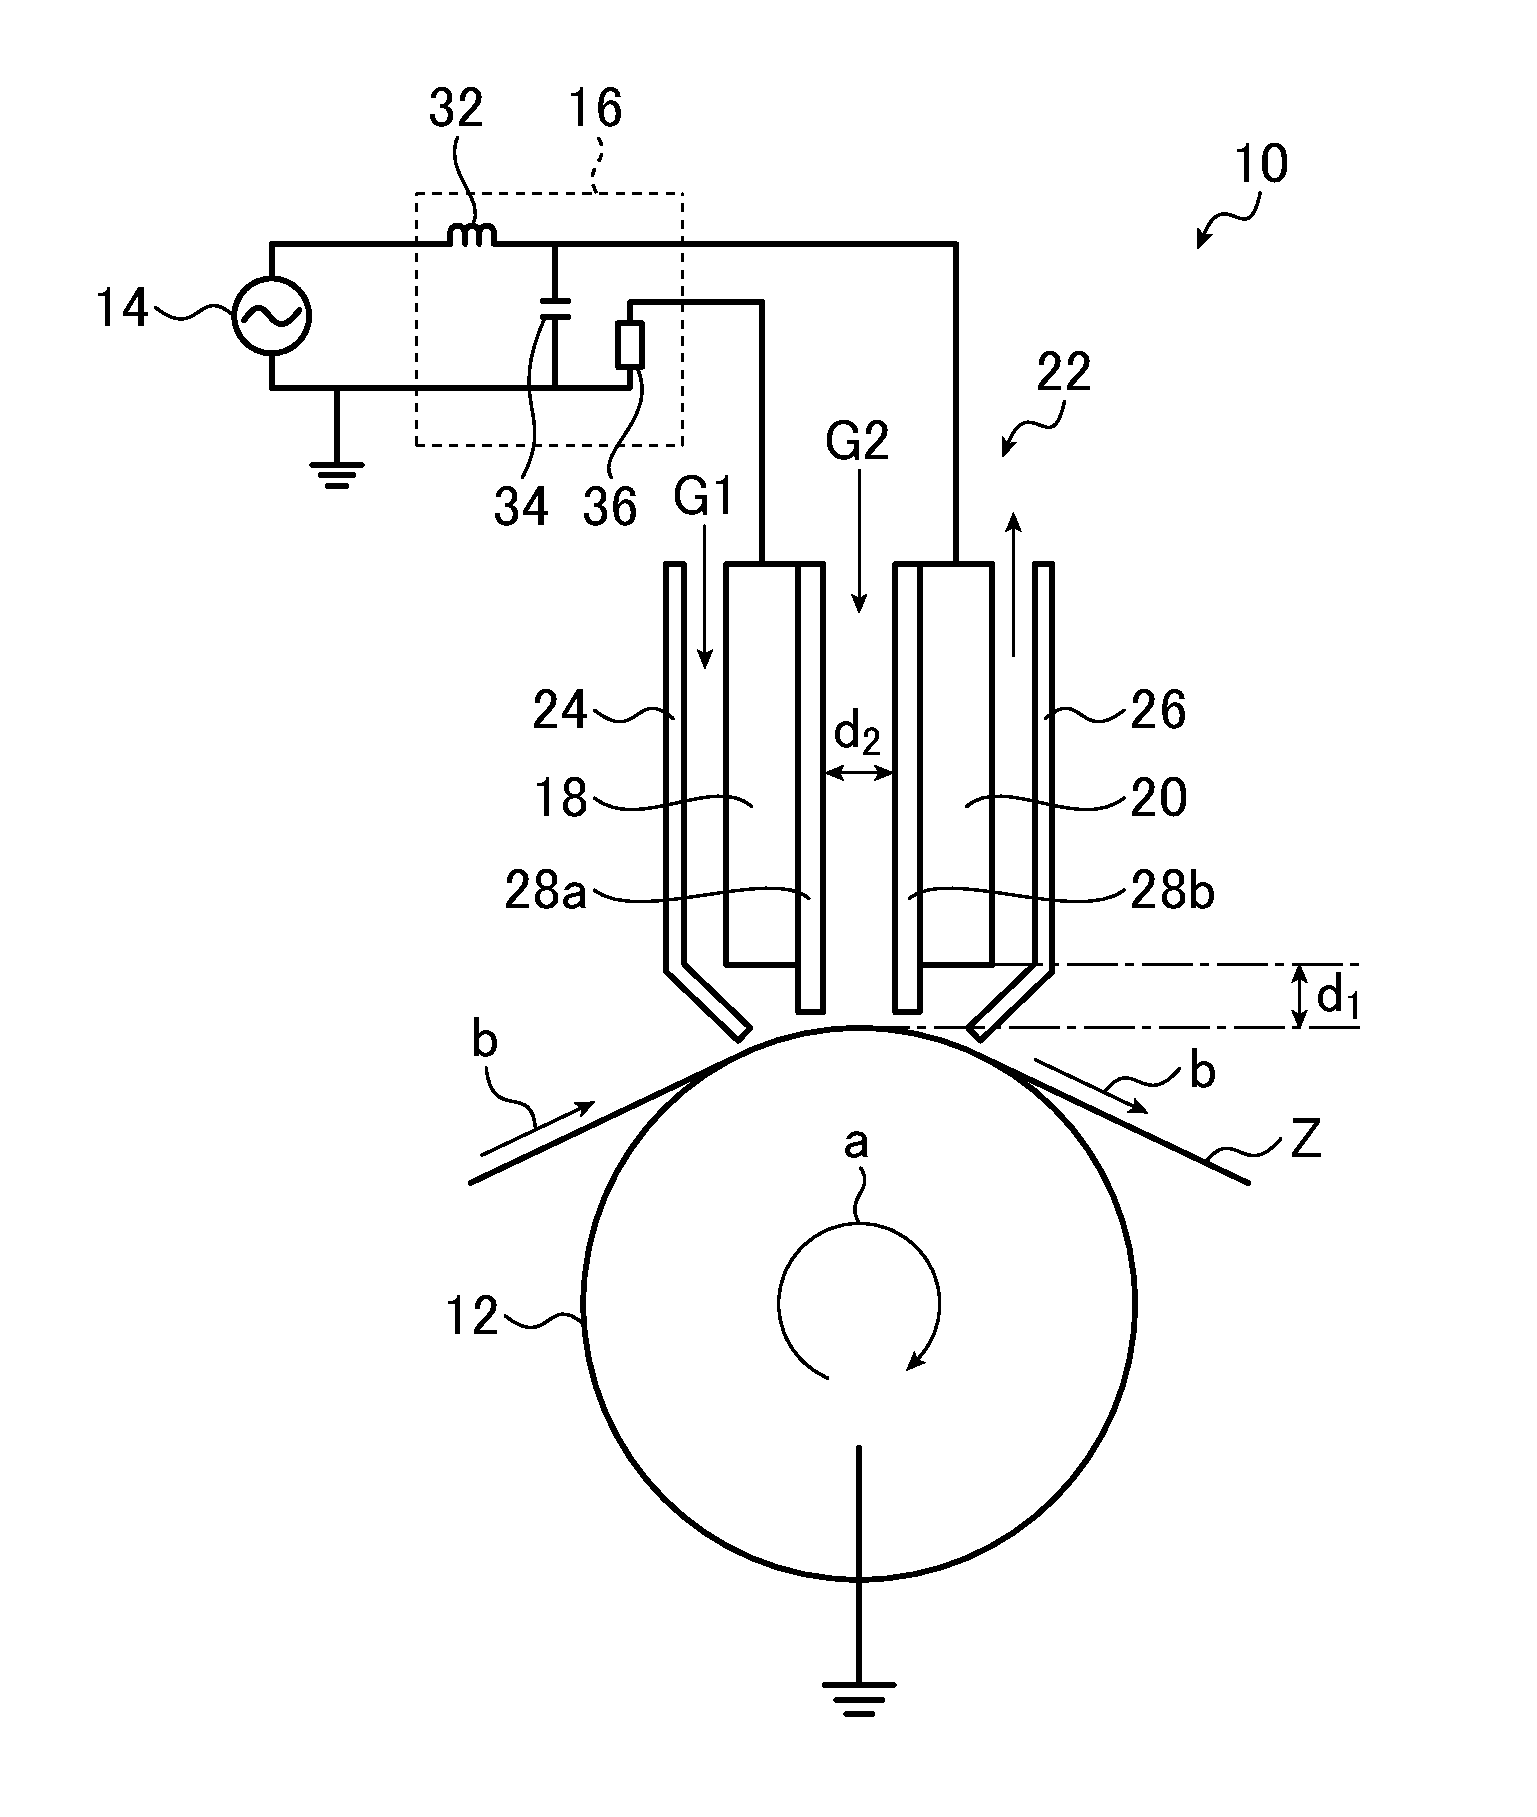 Method of manufacturing transparent conductive film